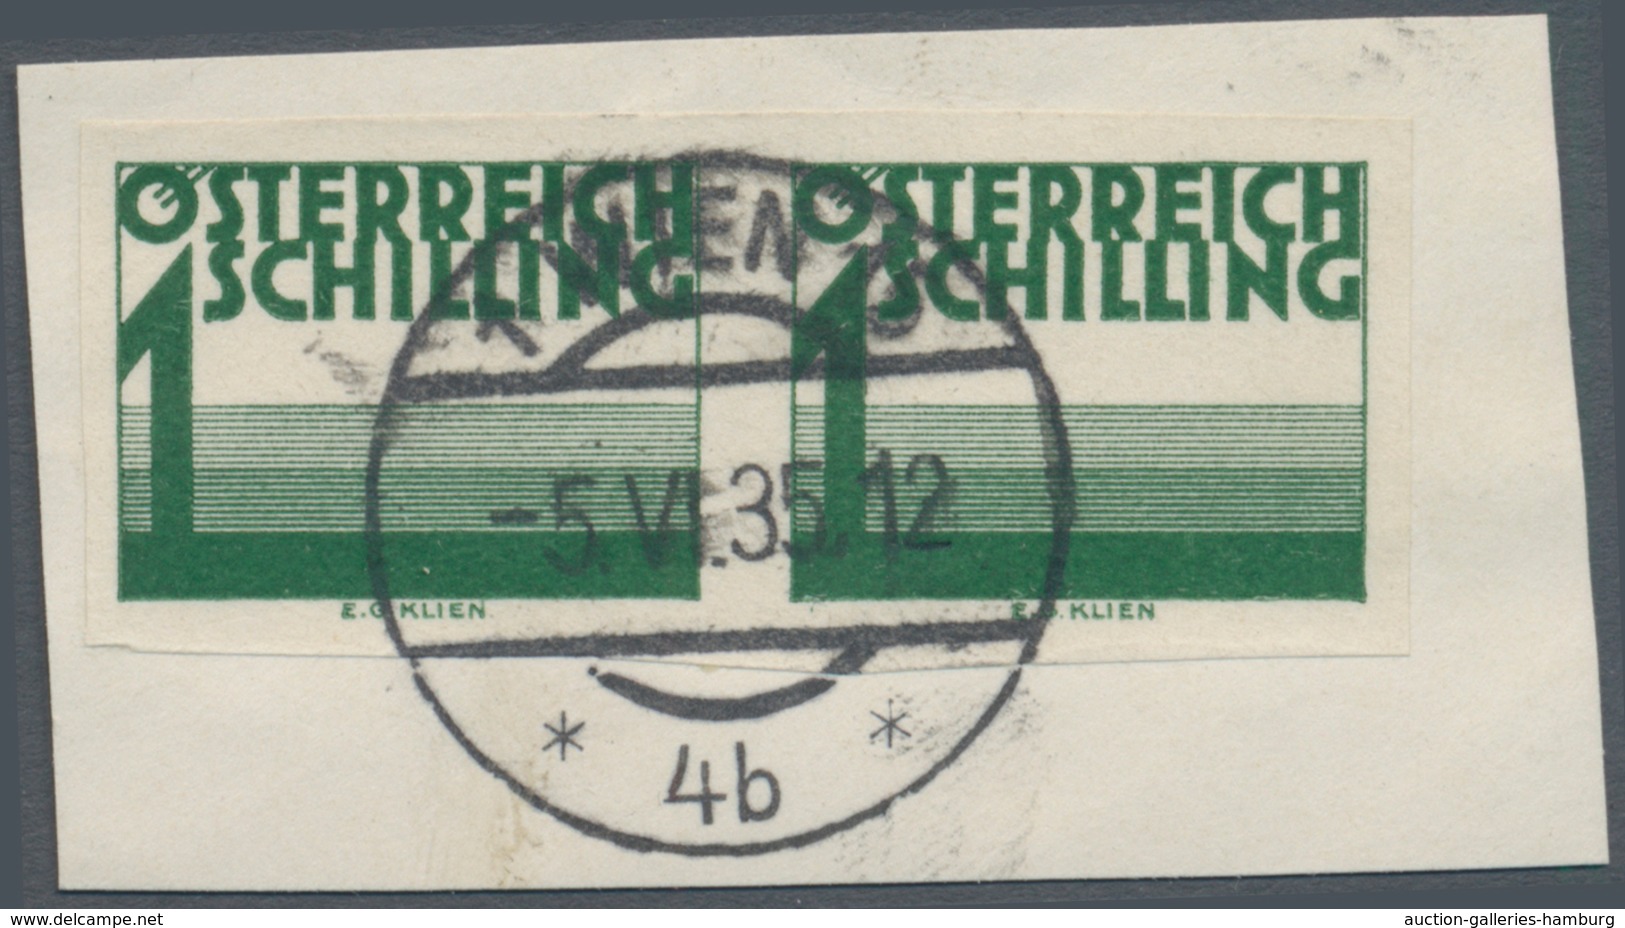 Österreich - Portomarken: 1925/1934, Ziffern 5 Gr. bis 2 Sch., zehn Werte je in ungezähnten Paaren,